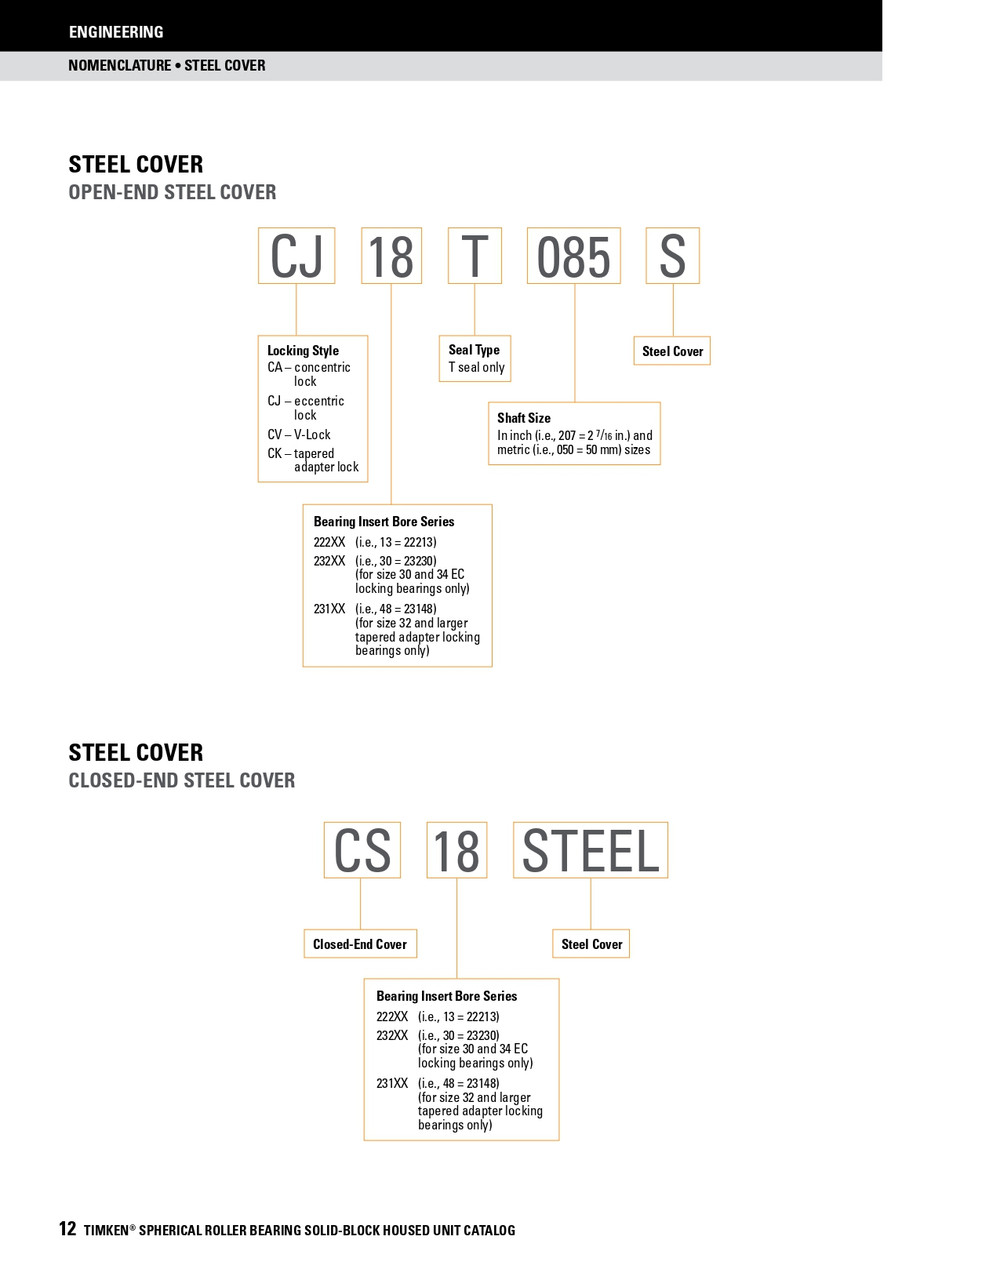 6-7/16" Timken SRB Steel Open End Cover w/Teflon Seal - TA/DV Taper Lock Bushing Type  CK36T607S